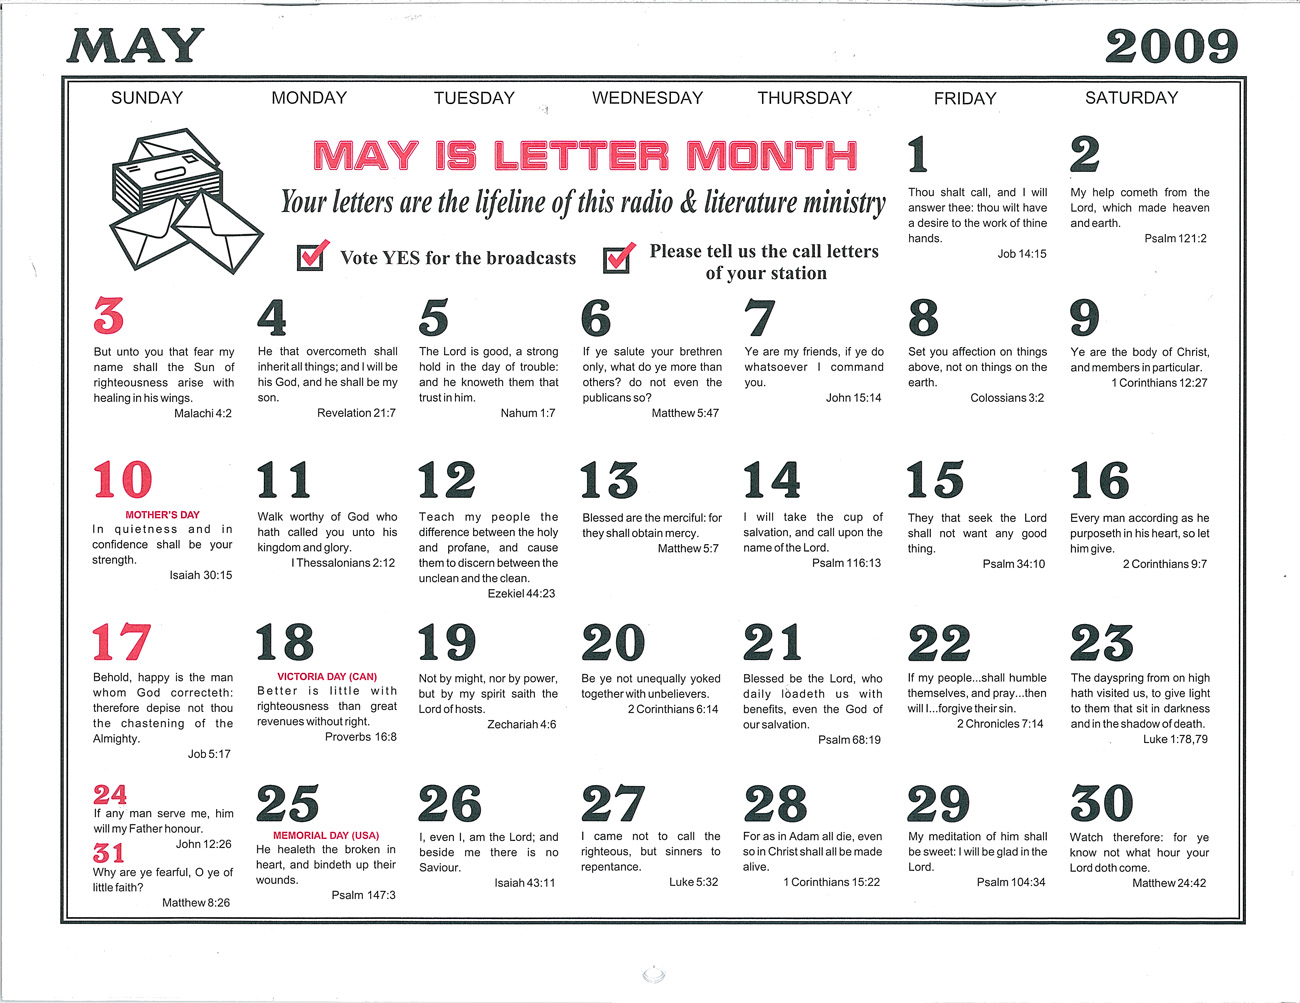 May: 2009 Daily Bible Text Calendar